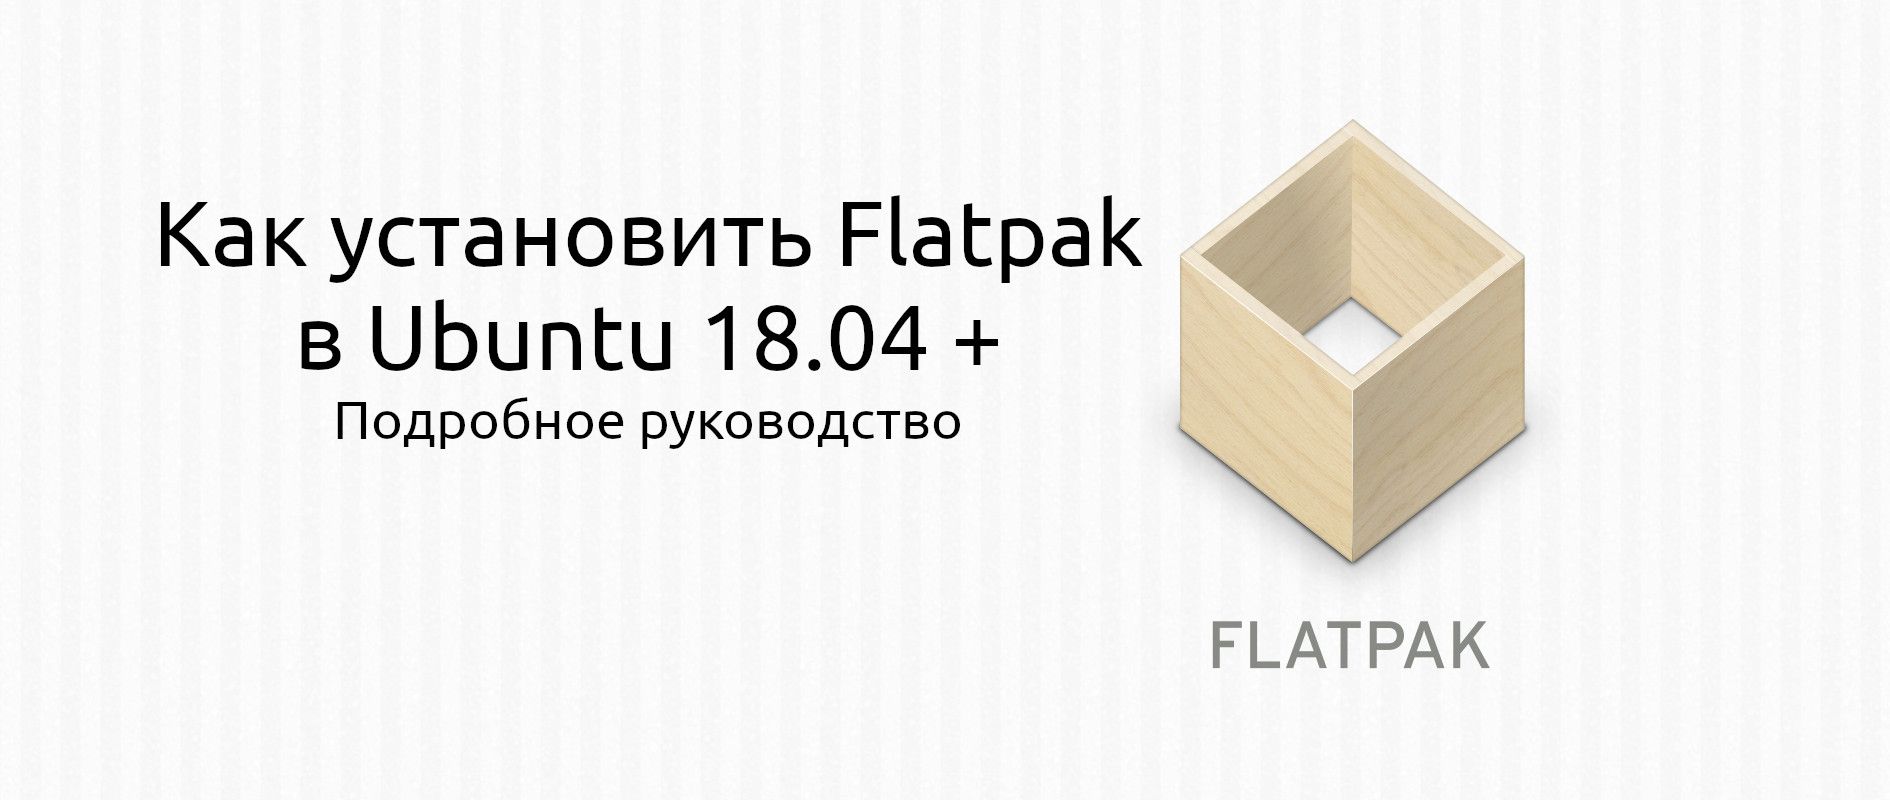 Как установить Flatpak в Ubuntu (пошаговое руководство)